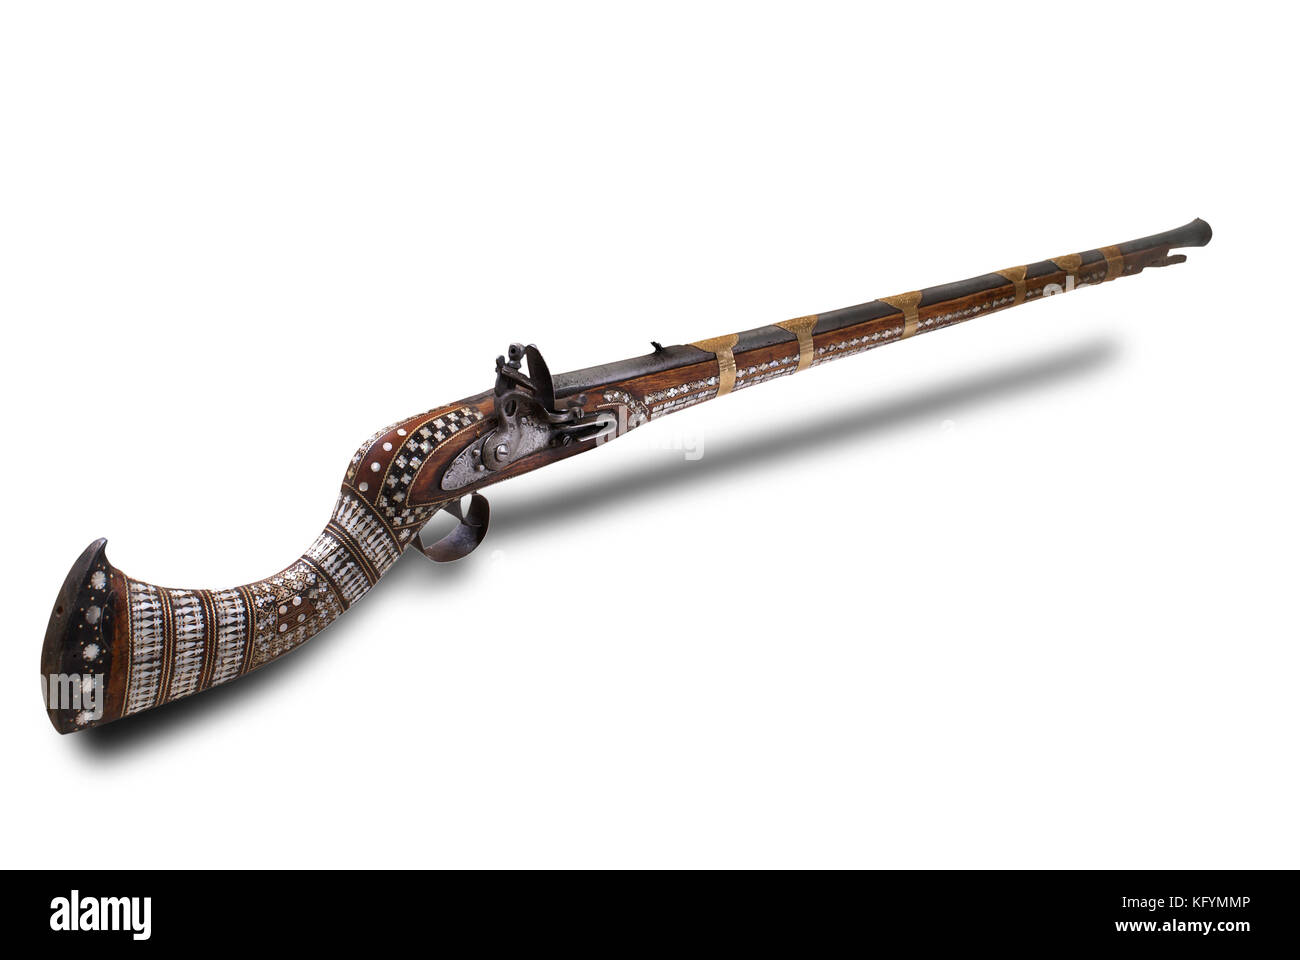 Afghanische Gewehr mit schönen Perlmutt Dekoration. Das 19. Jahrhundert. Pfad auf dem weißen Hintergrund. Stockfoto